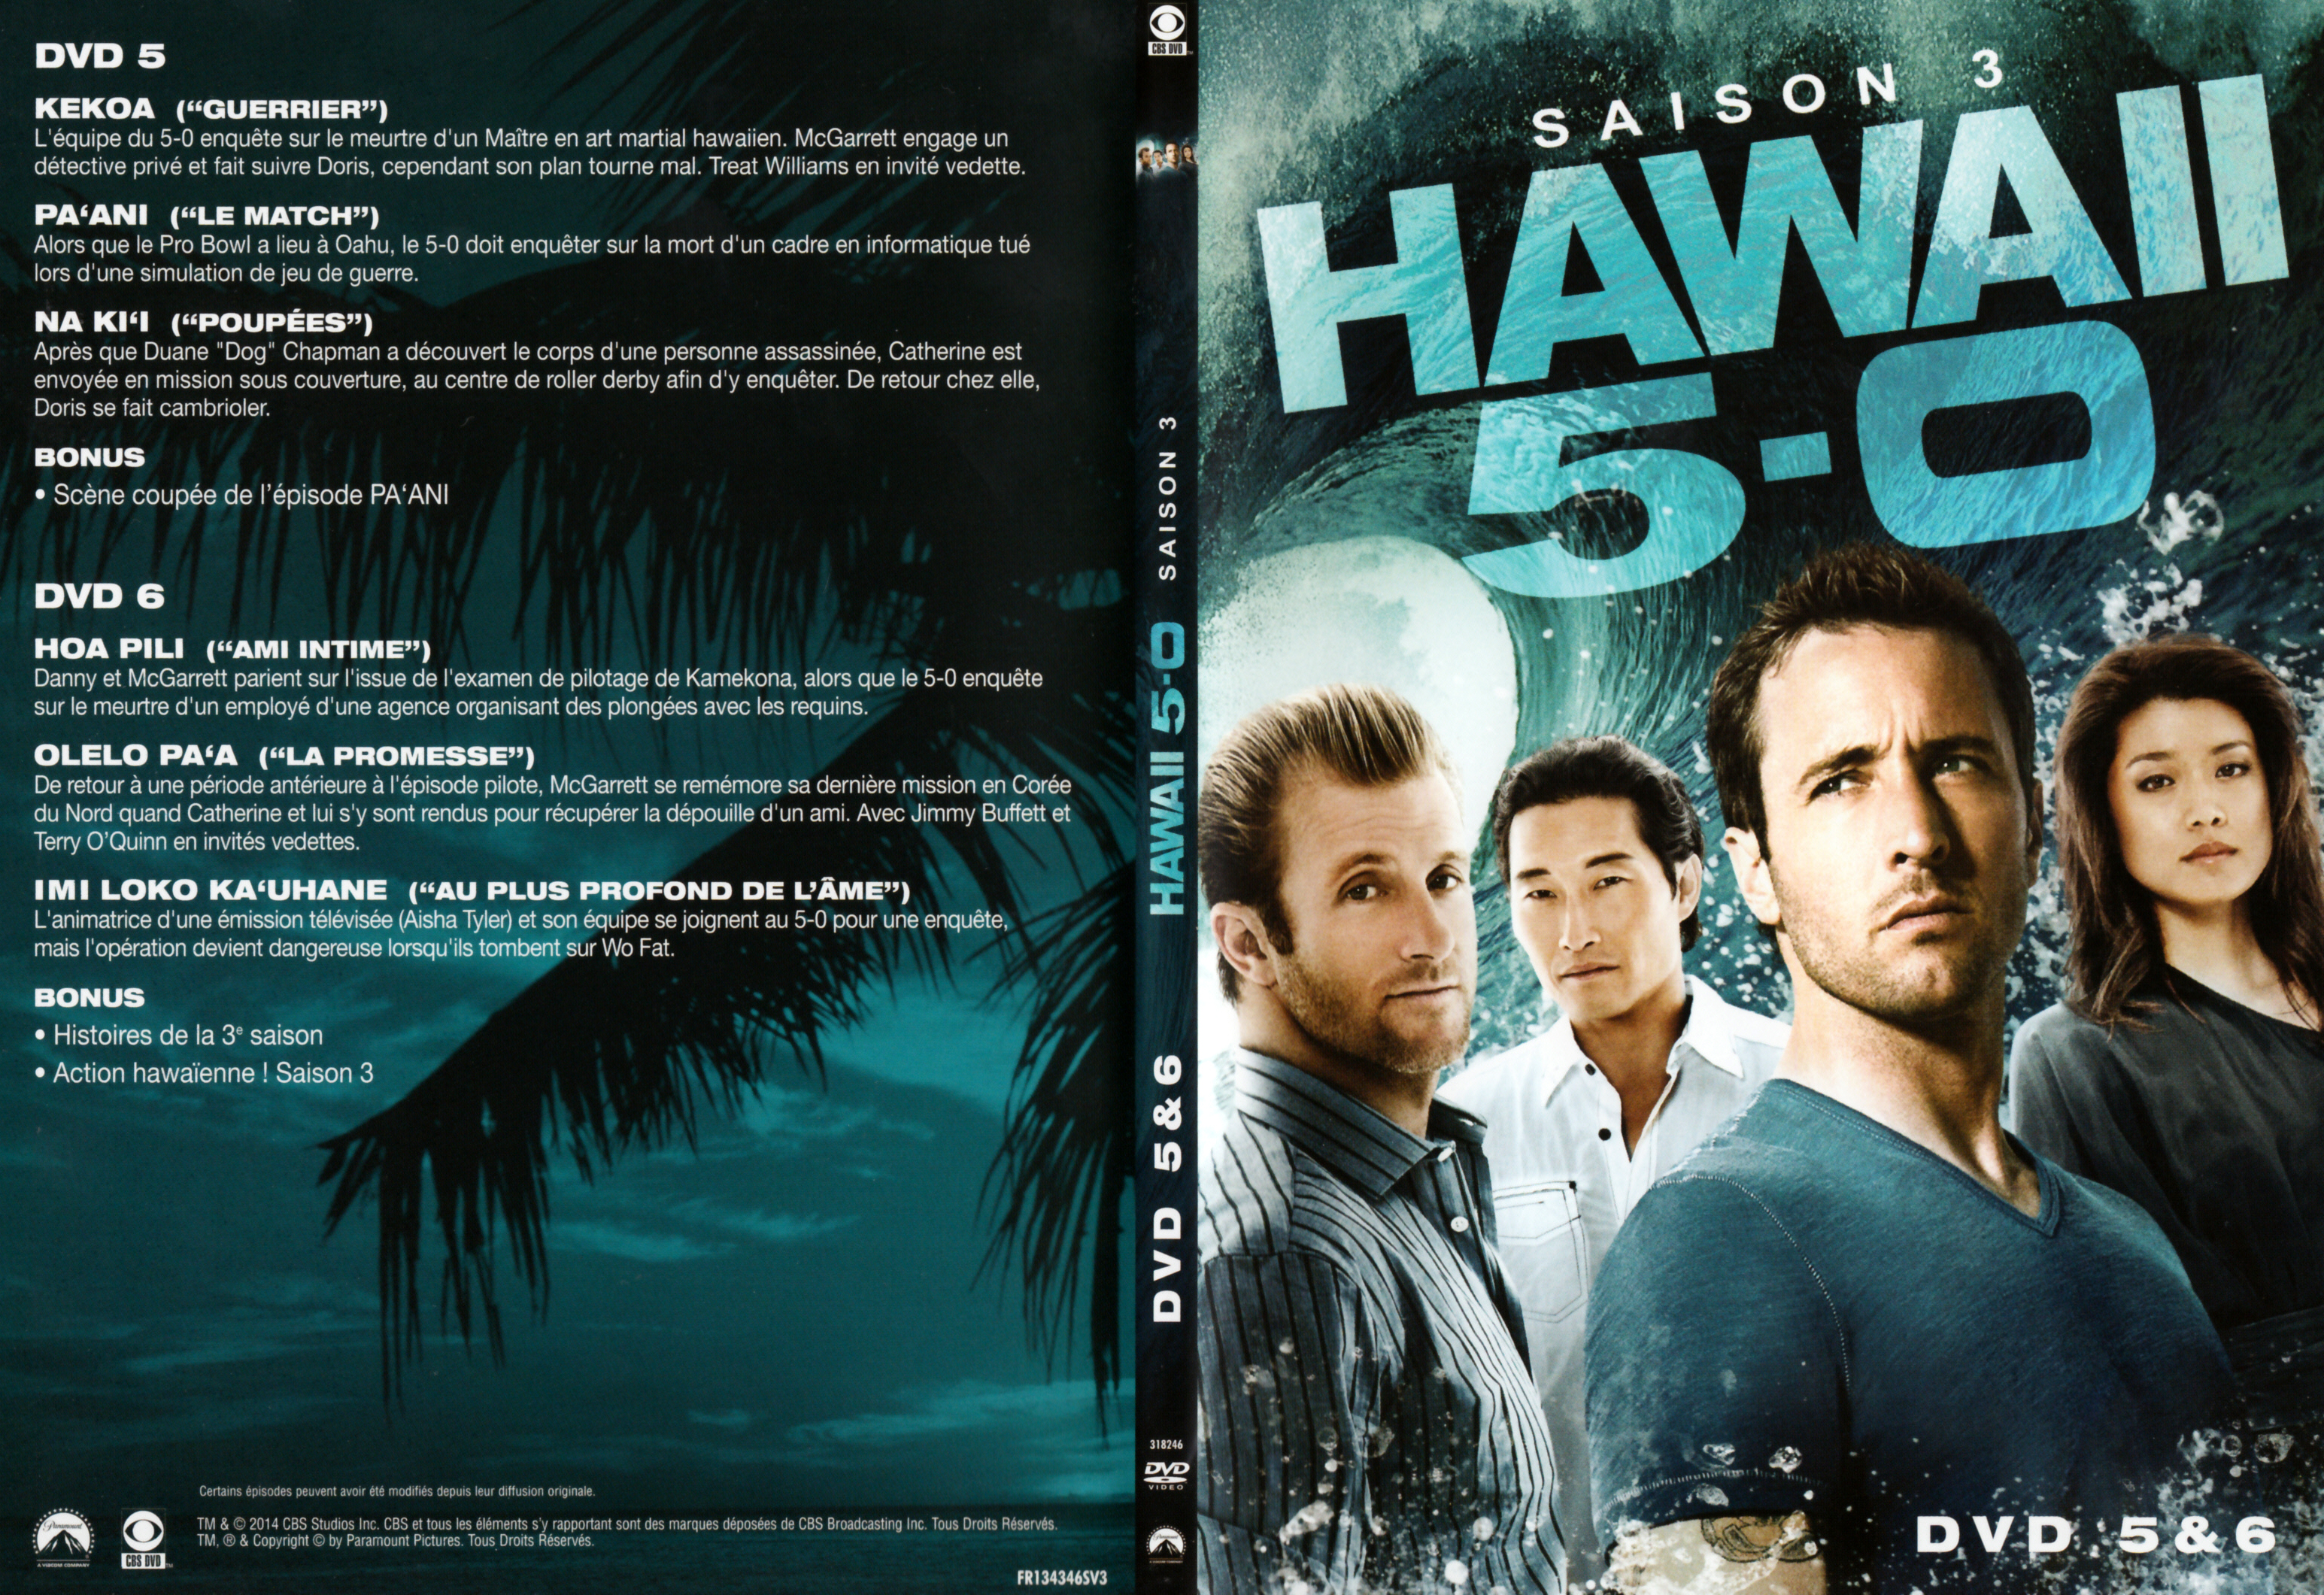 Jaquette DVD Hawaii Five-O Saison 3 DVD 3